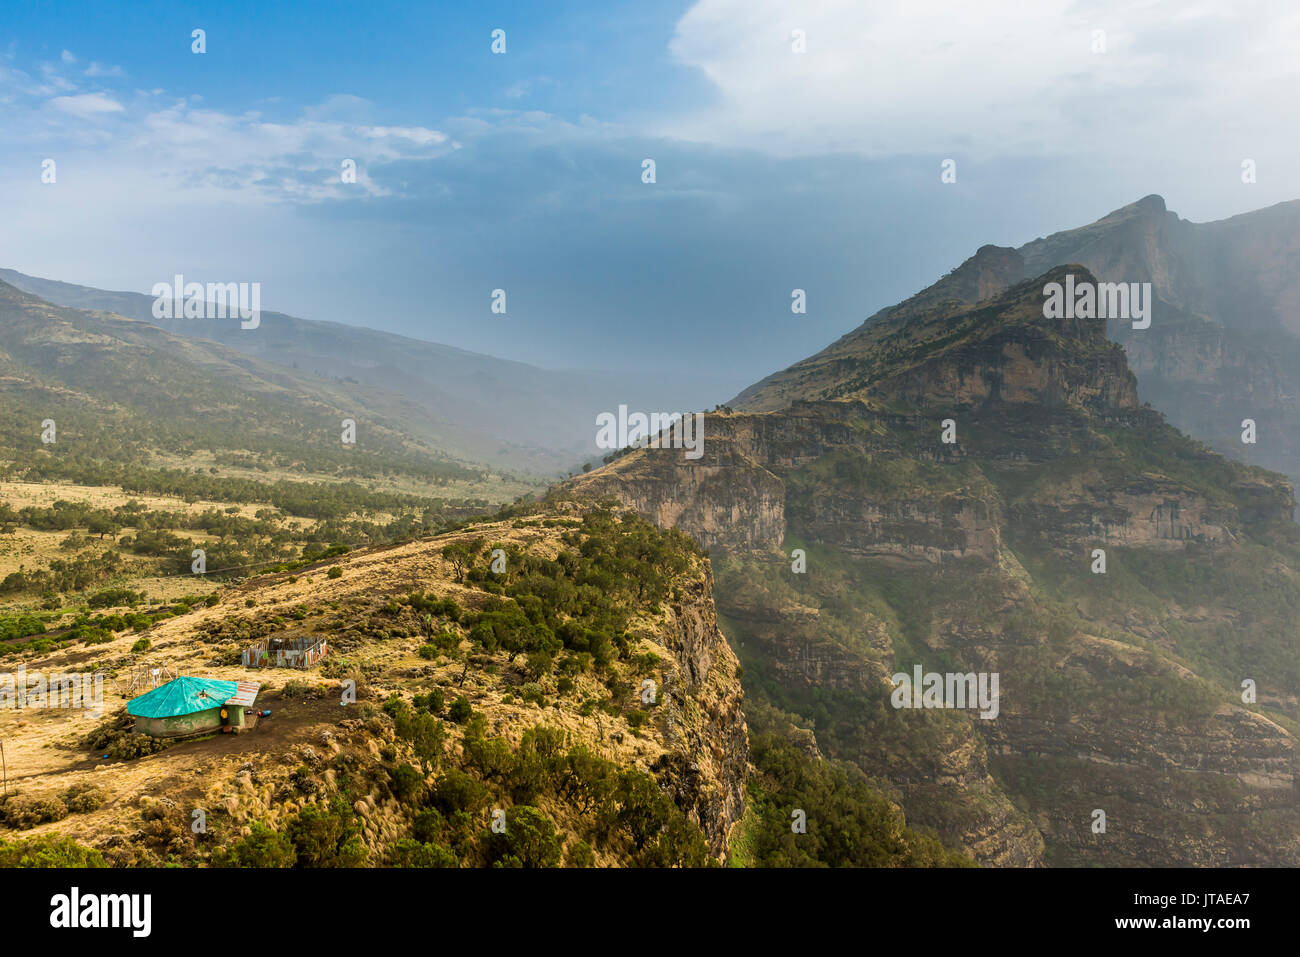 Gemeinschaft Haus am Rande einer Klippe, Simien Mountains National Park, UNESCO-Weltkulturerbe, Debarq, Äthiopien, Afrika Stockfoto